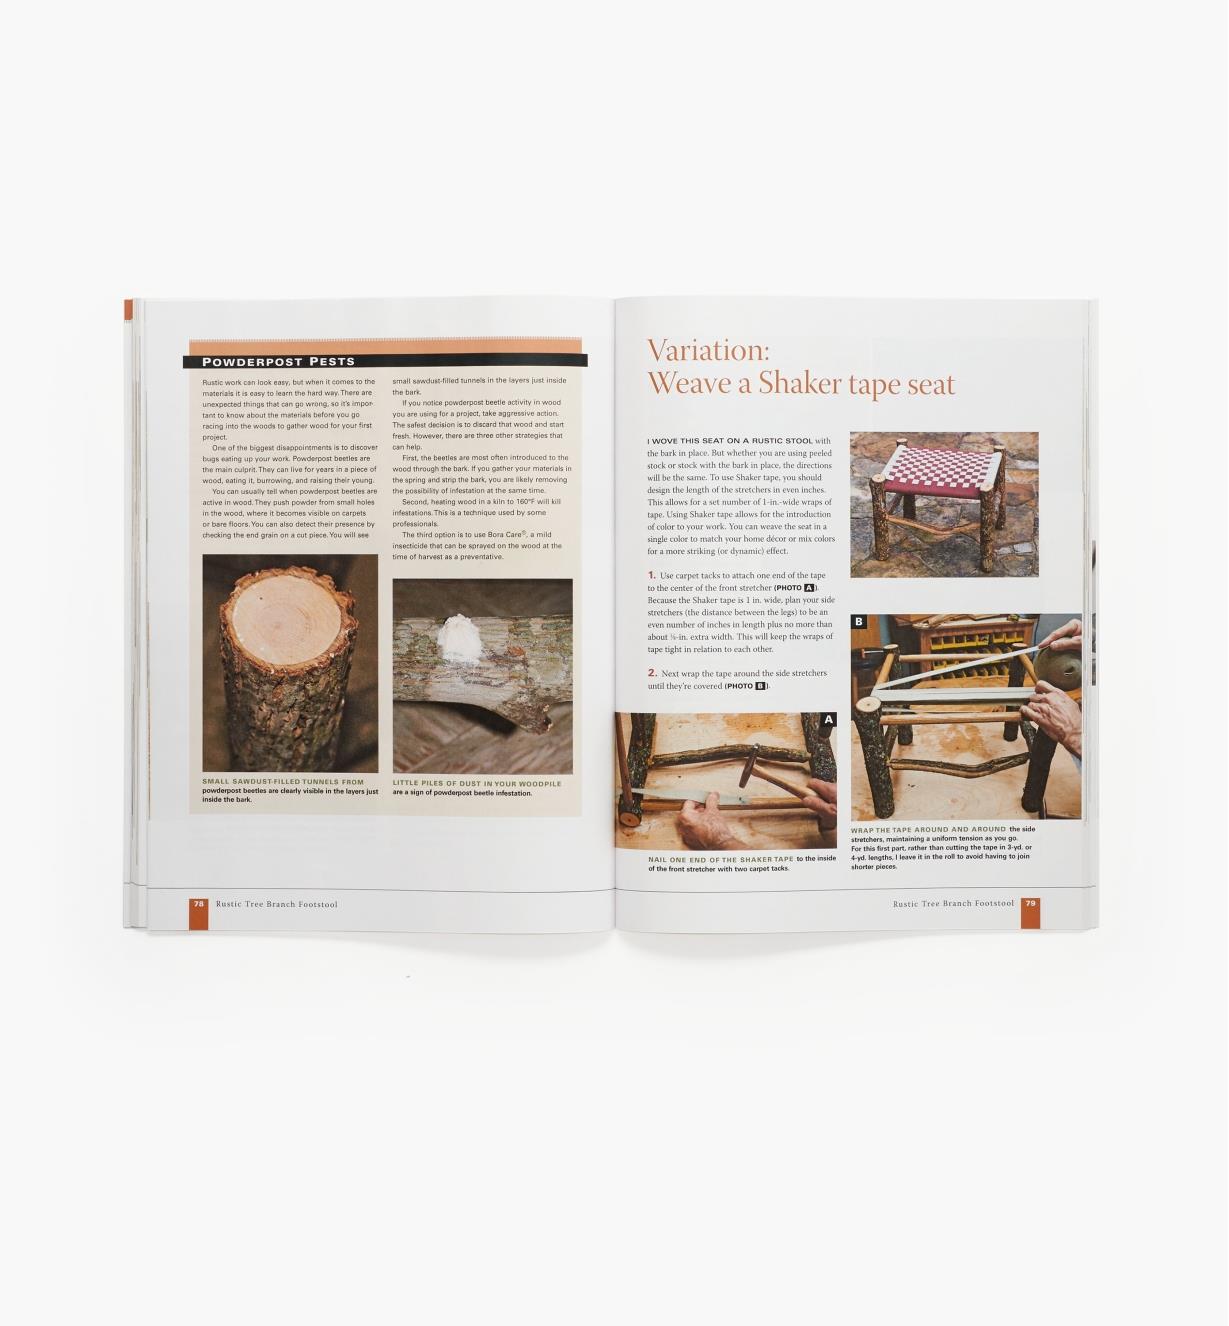 73l0484 - Rustic Furniture, Book